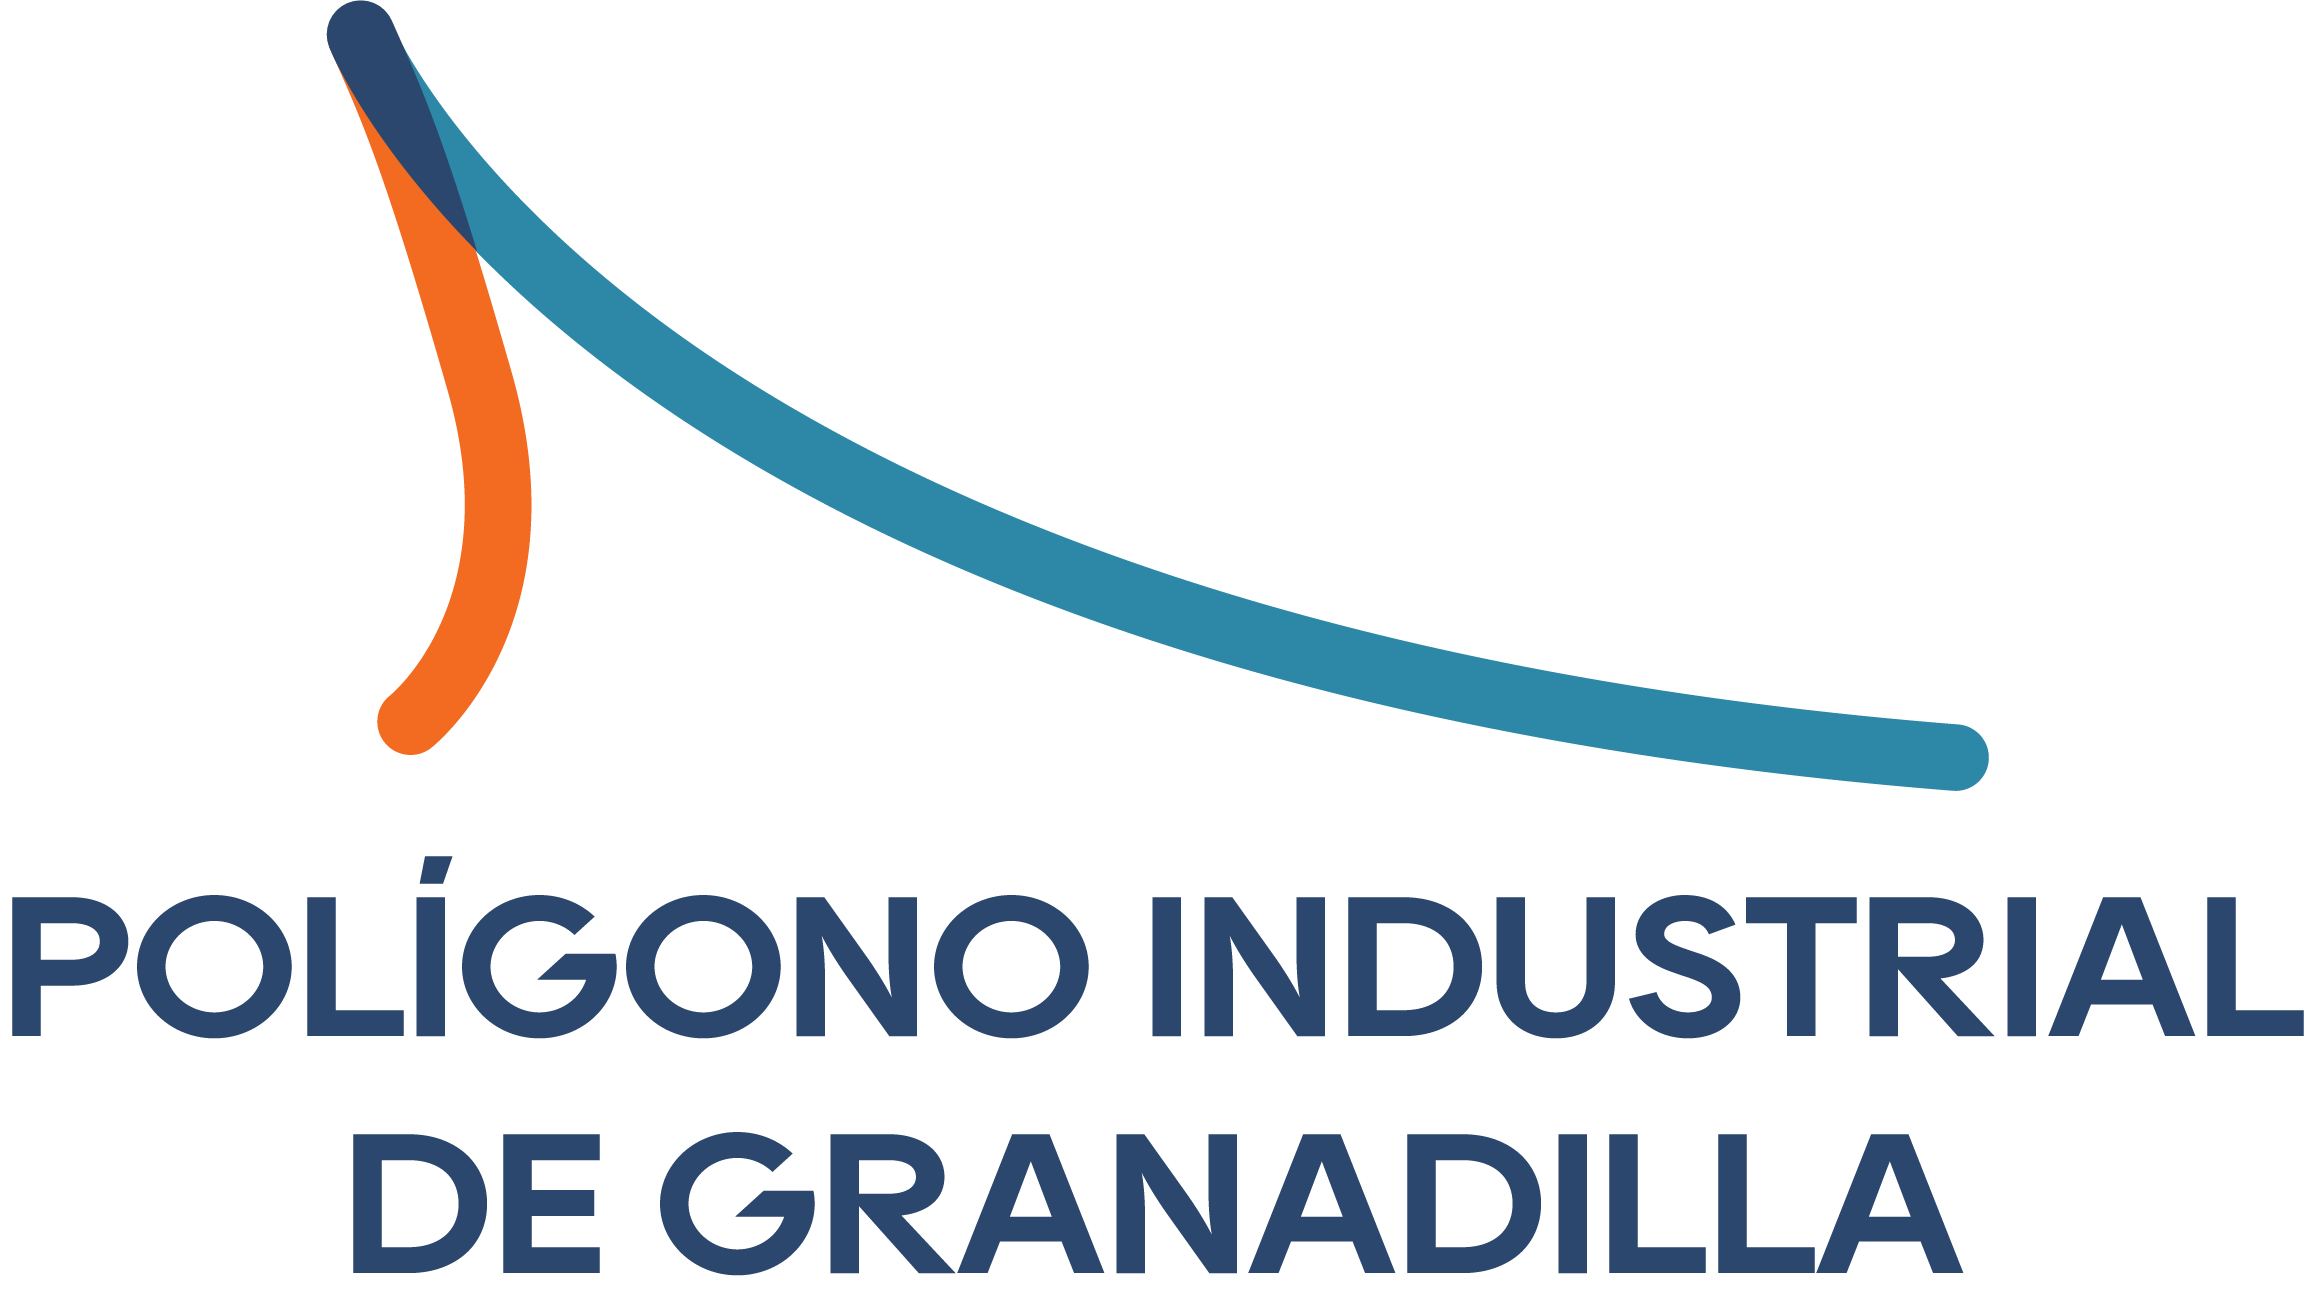 Polígono Industrial de Granadilla S.A.